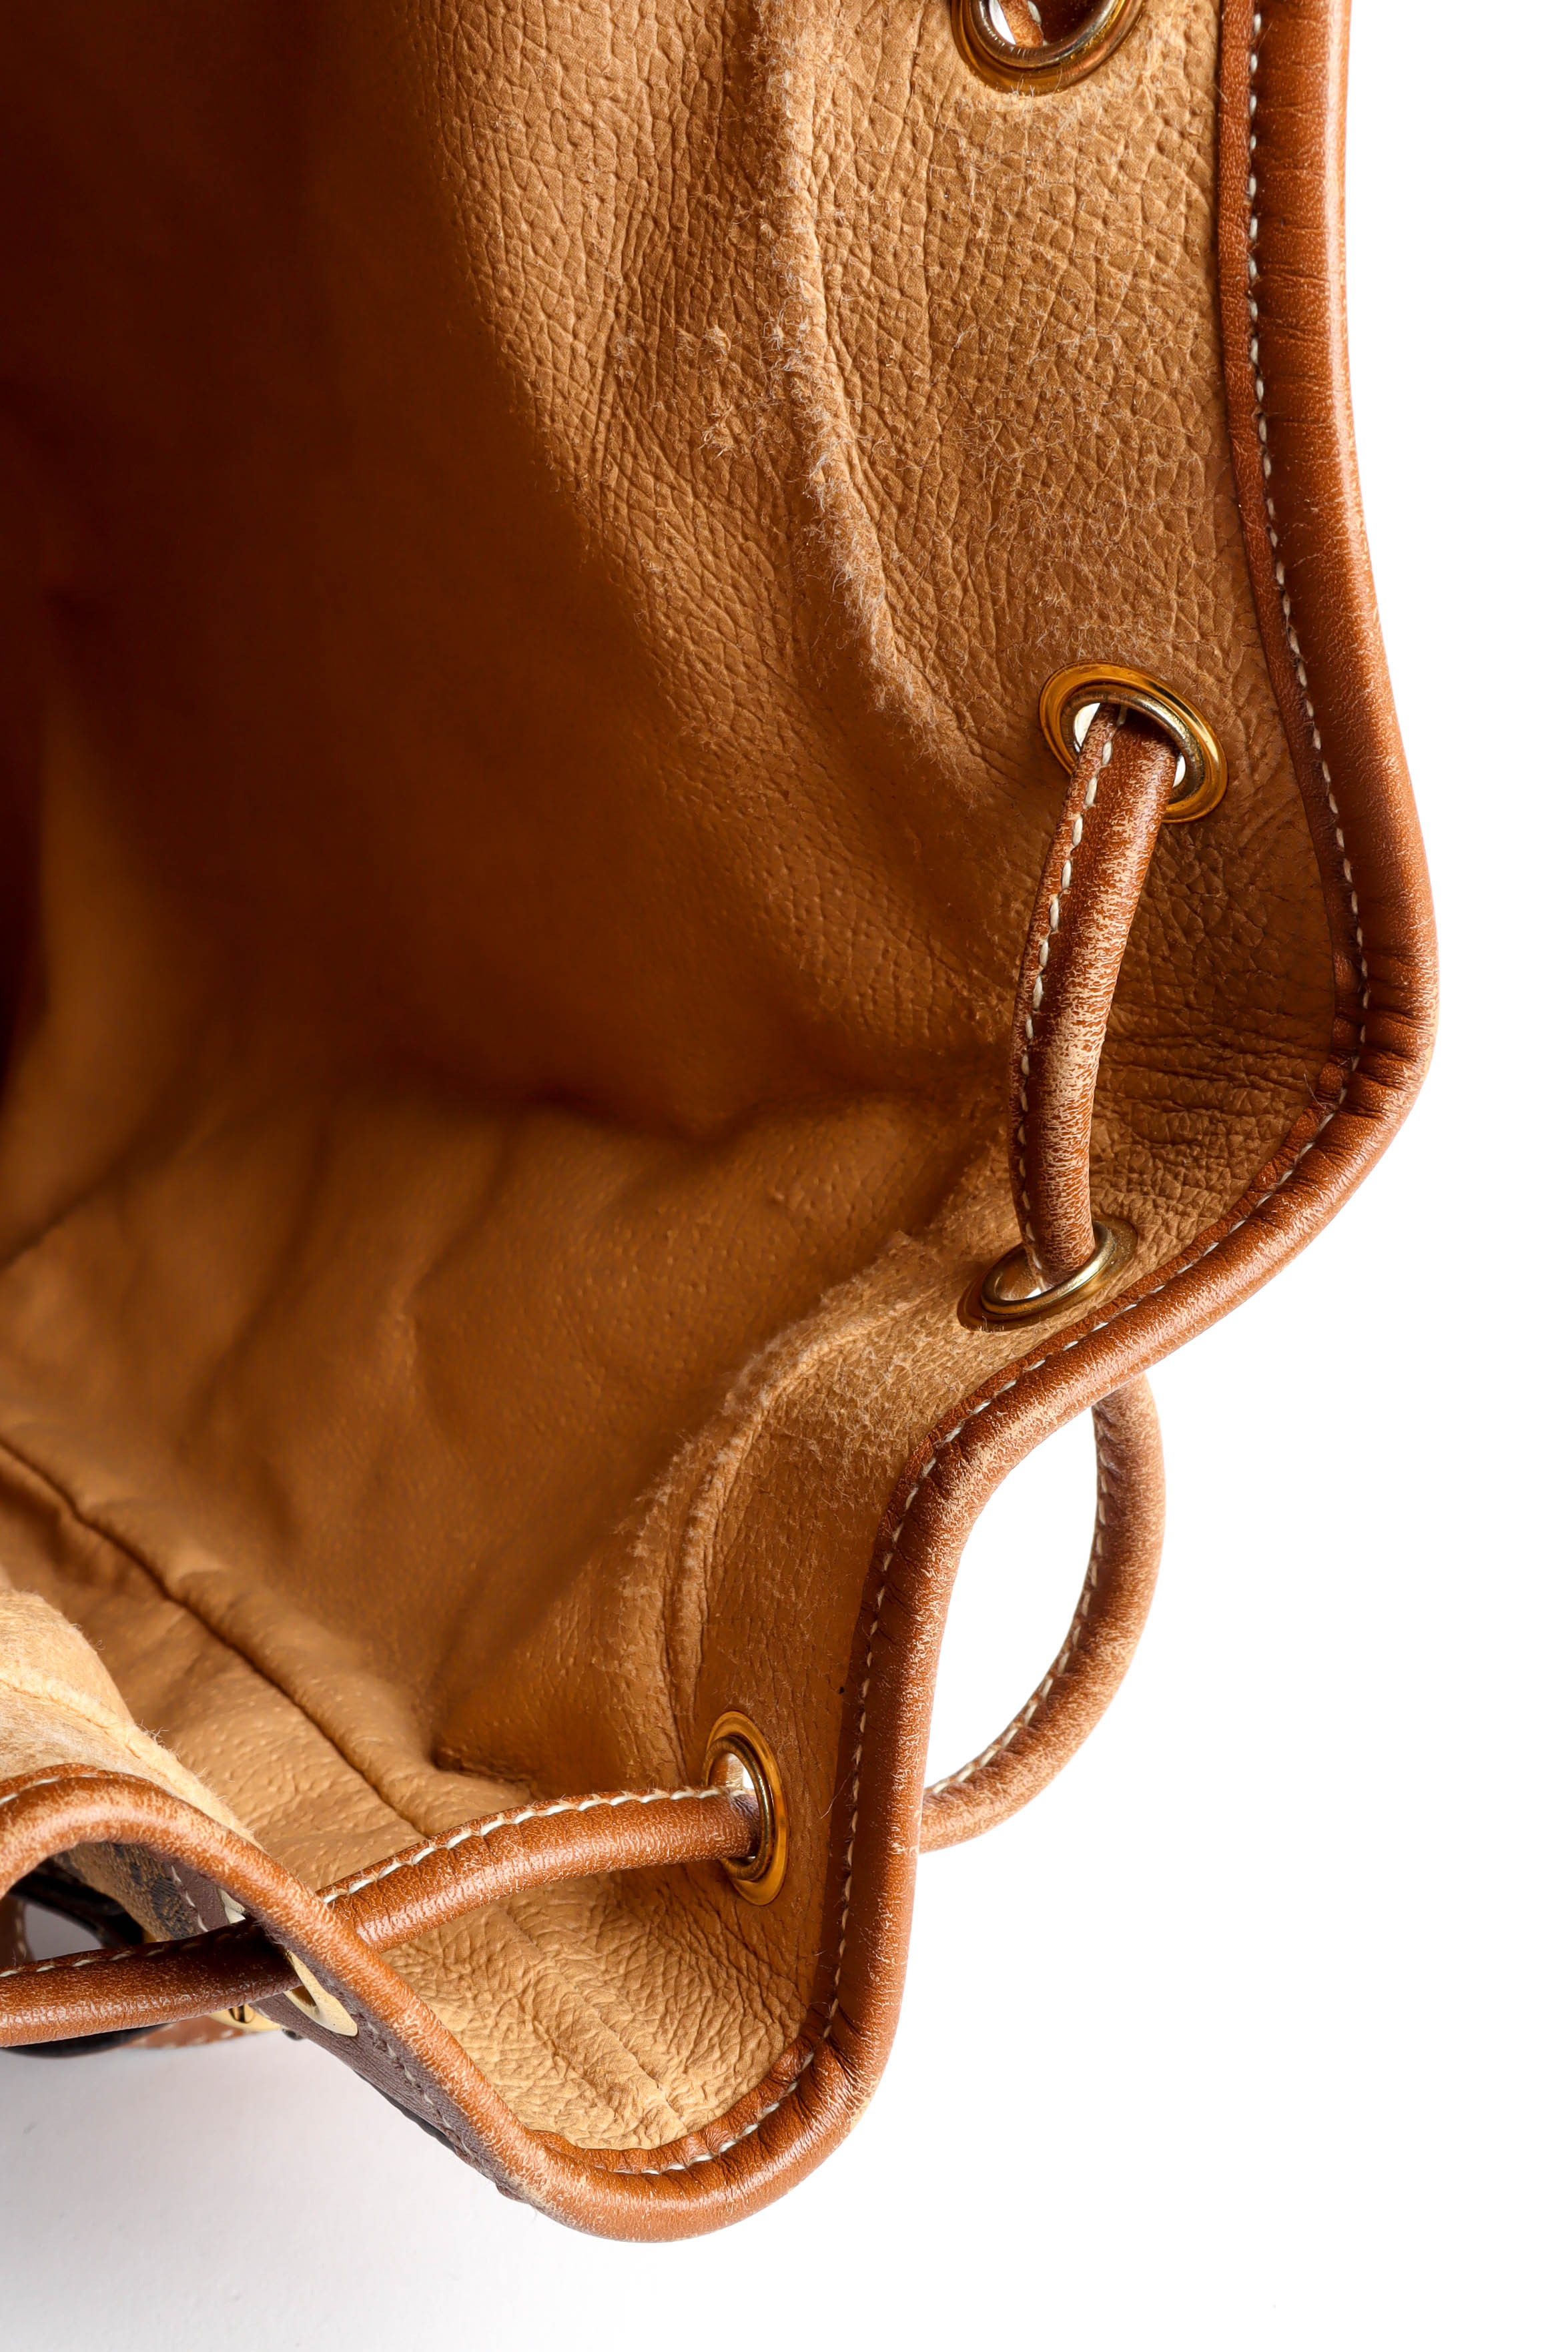 Vintage Gucci GG Monogram Bucket Bag bag lining detail/scuff seams@ Recess LA